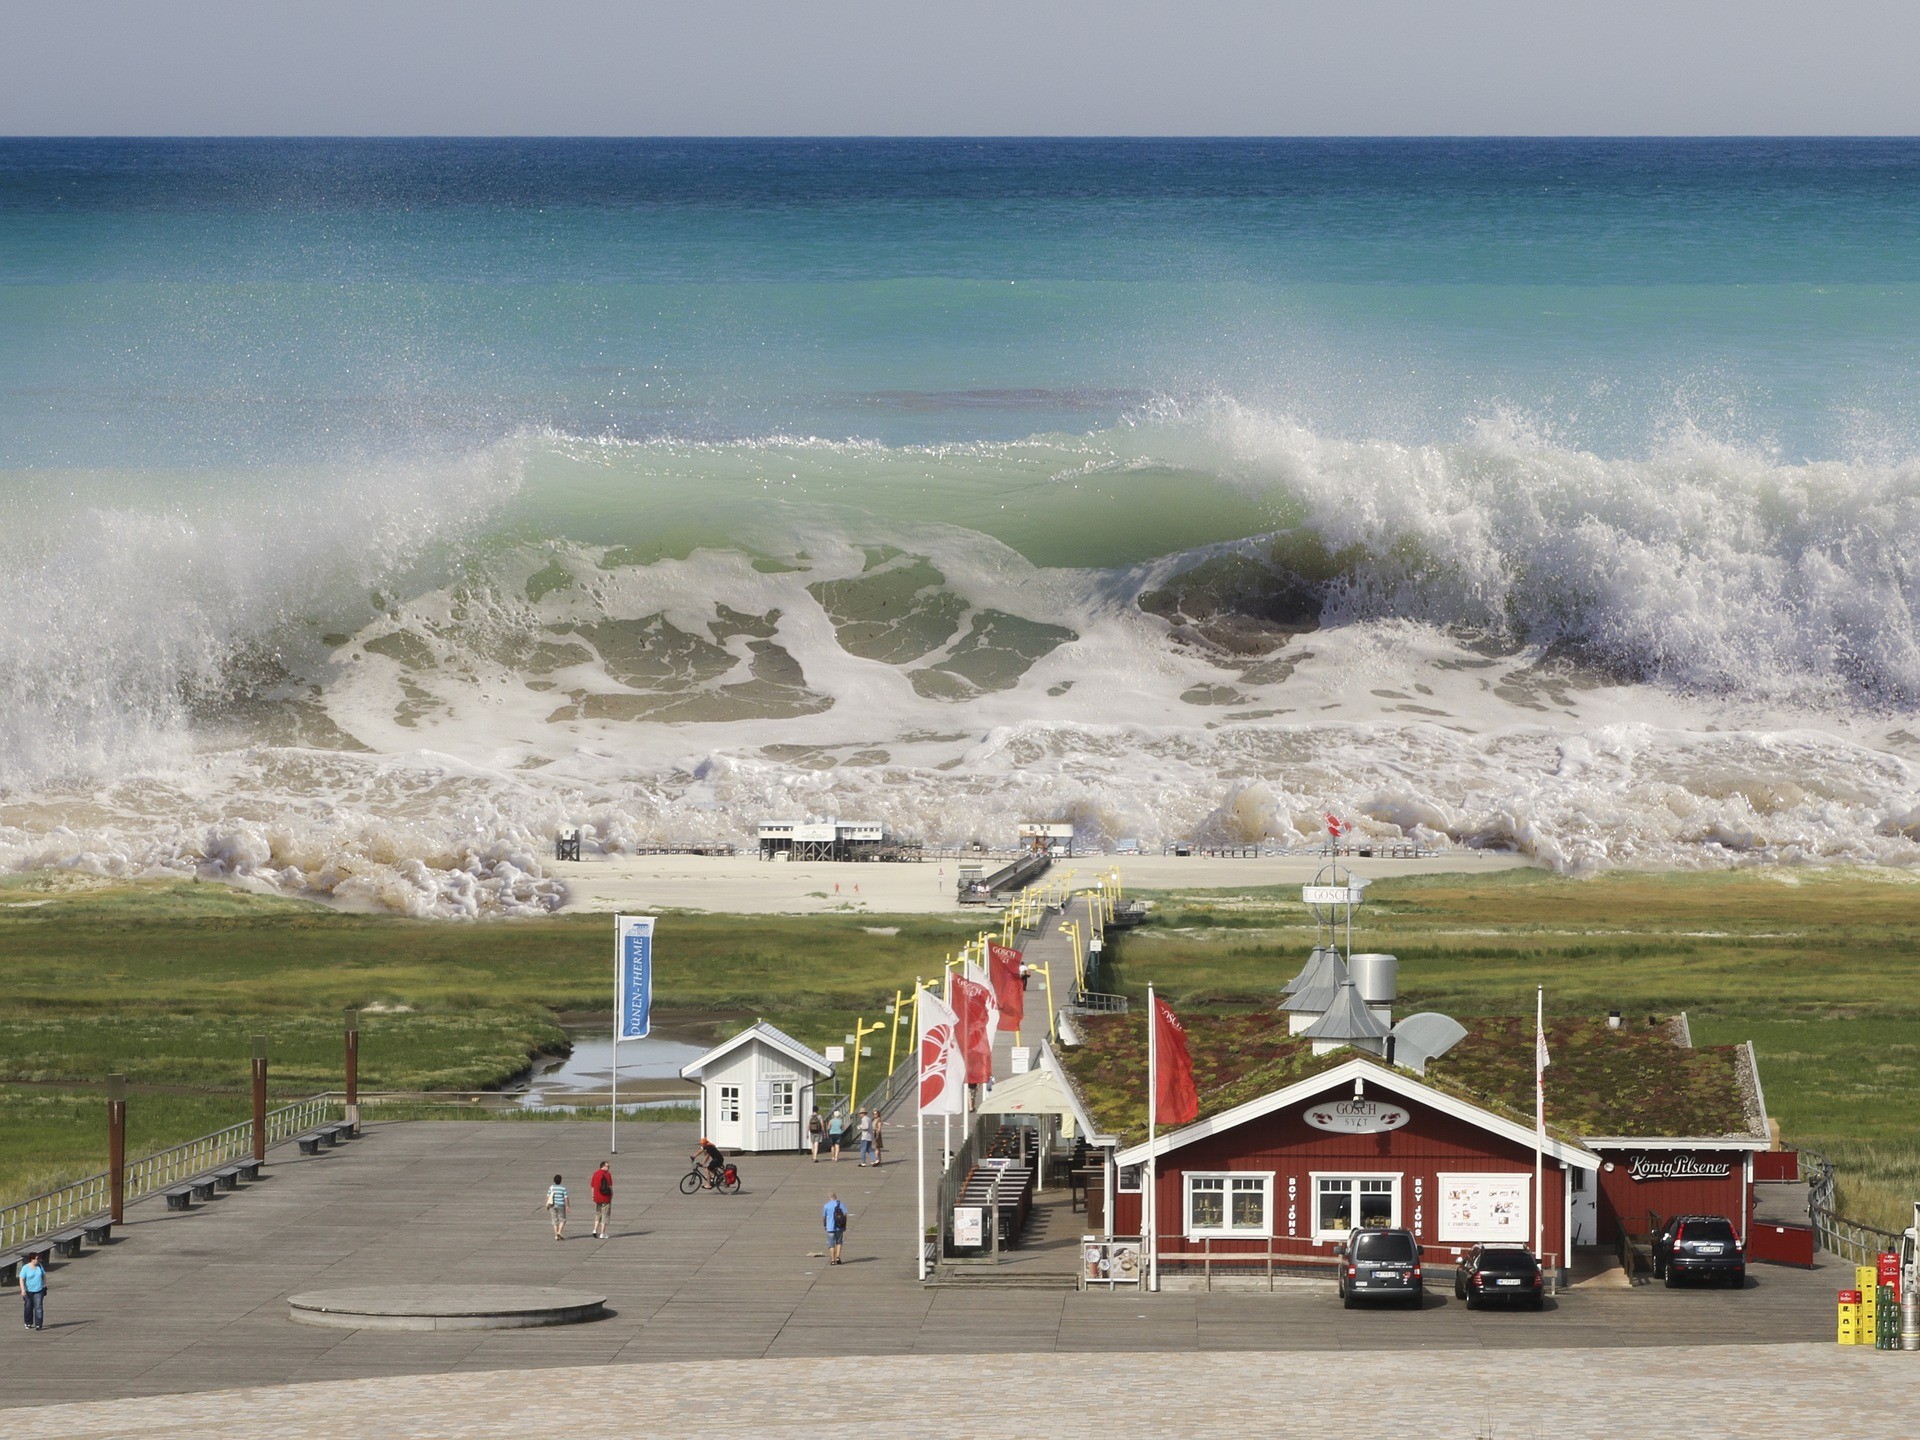 Aumento do nível do mar coloca 2,4 milhões de casas sob risco nos EUA - Revista Galileu | Ciência